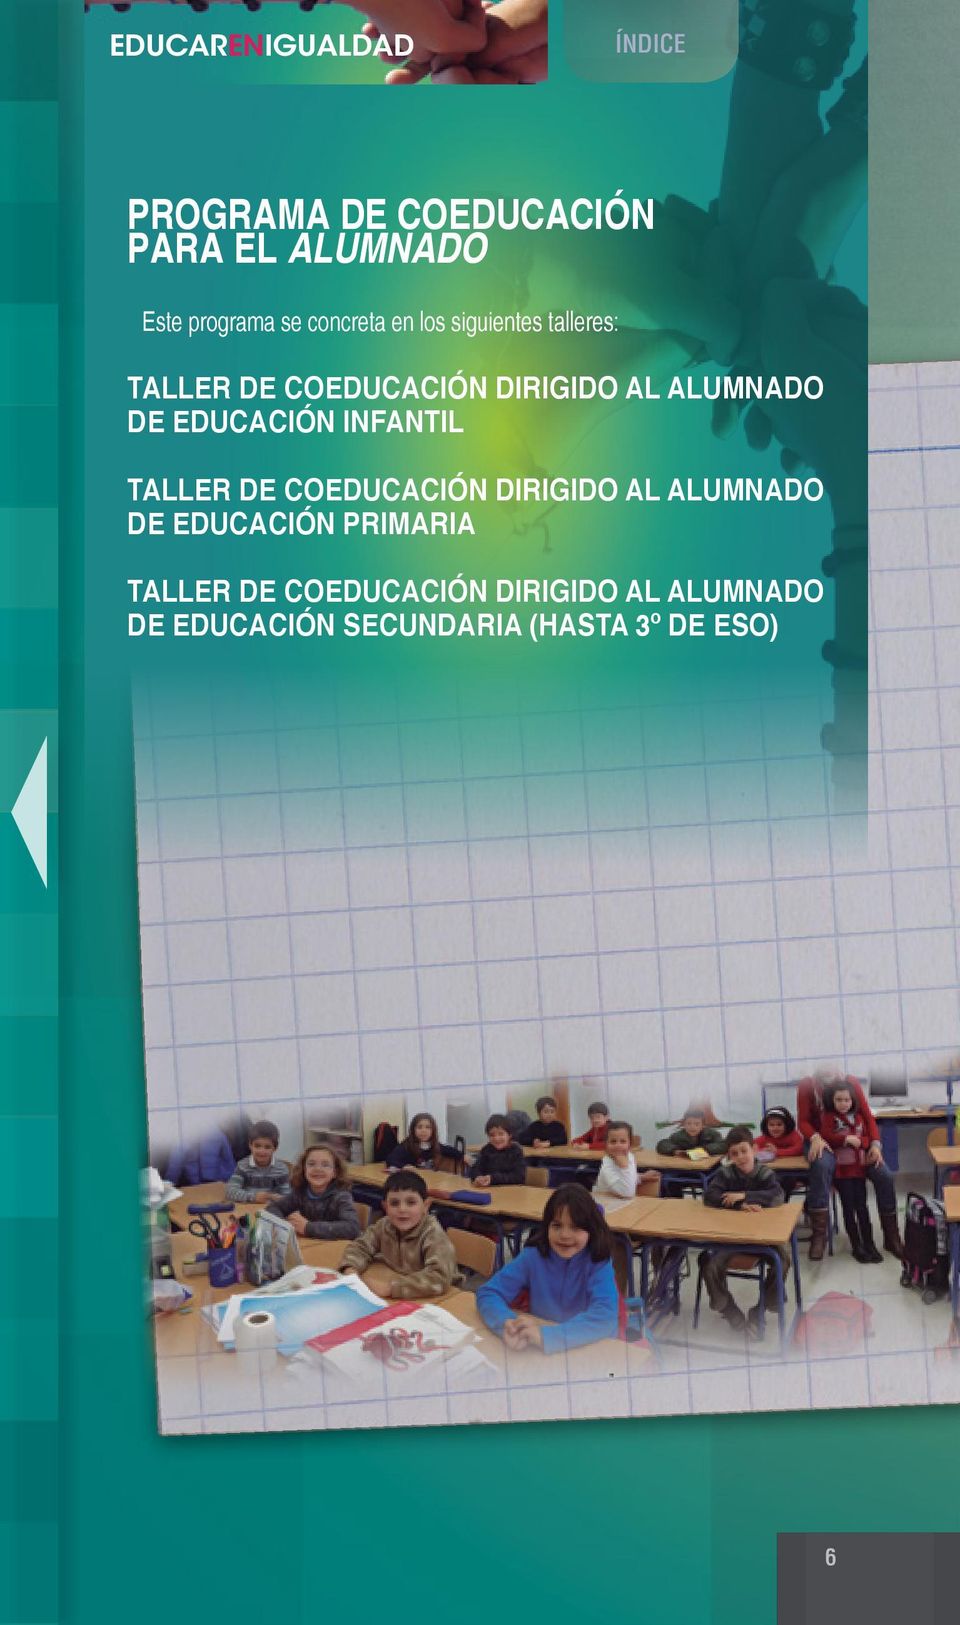 EDUCACIÓN INFANTIL TALLER DE COEDUCACIÓN DIRIGIDO AL ALUMNADO DE EDUCACIÓN